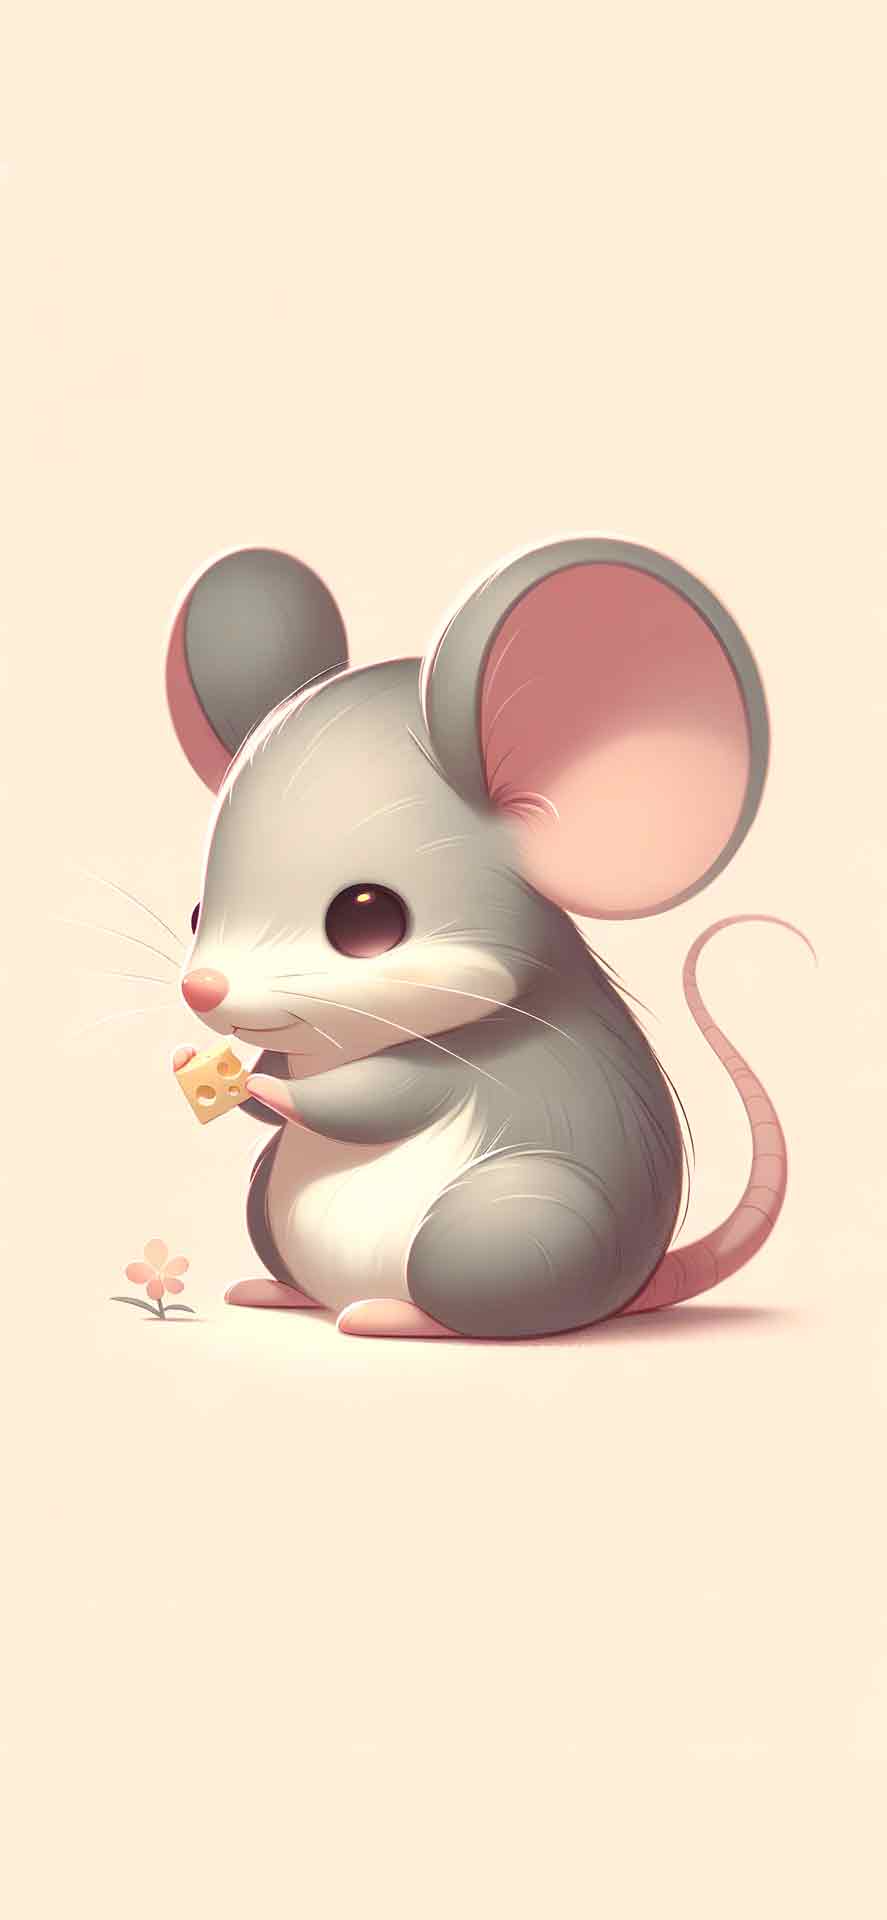 可爱的老鼠与奶酪米色壁纸